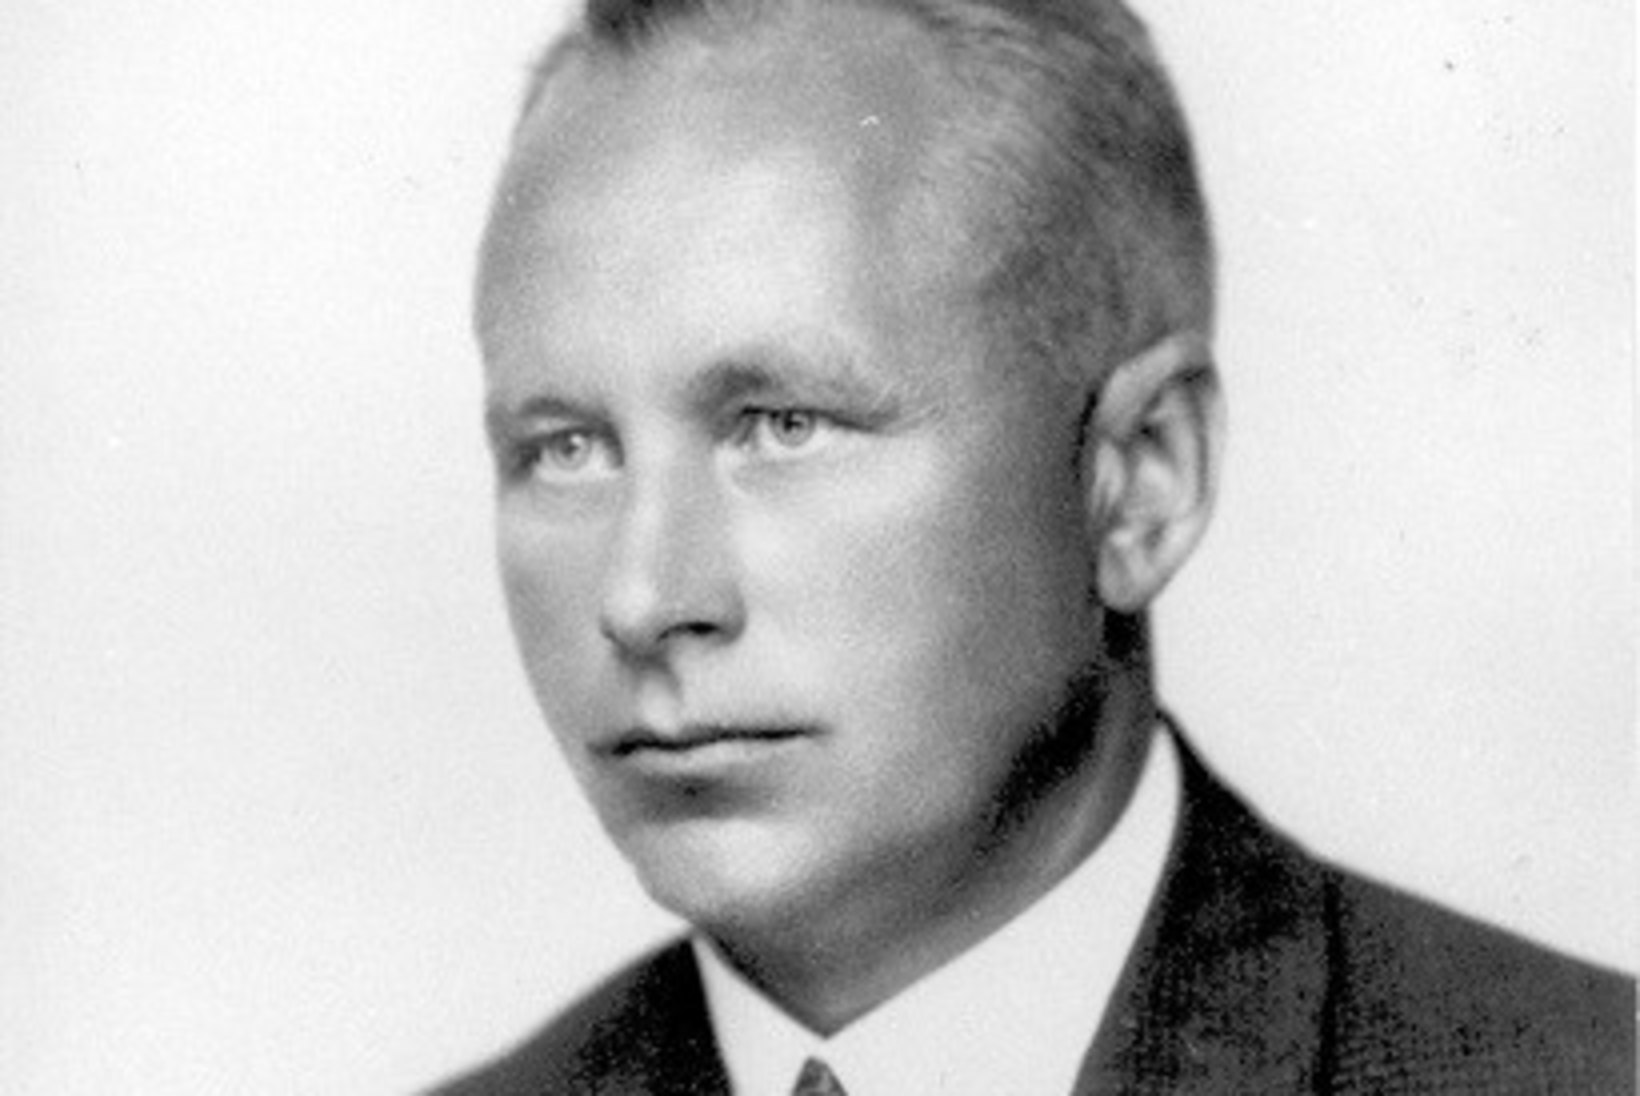 TÄNA AJALOOS | Aasta 1944. Jüri Uluots tegi Otto Tiefile ülesande luua valitsus